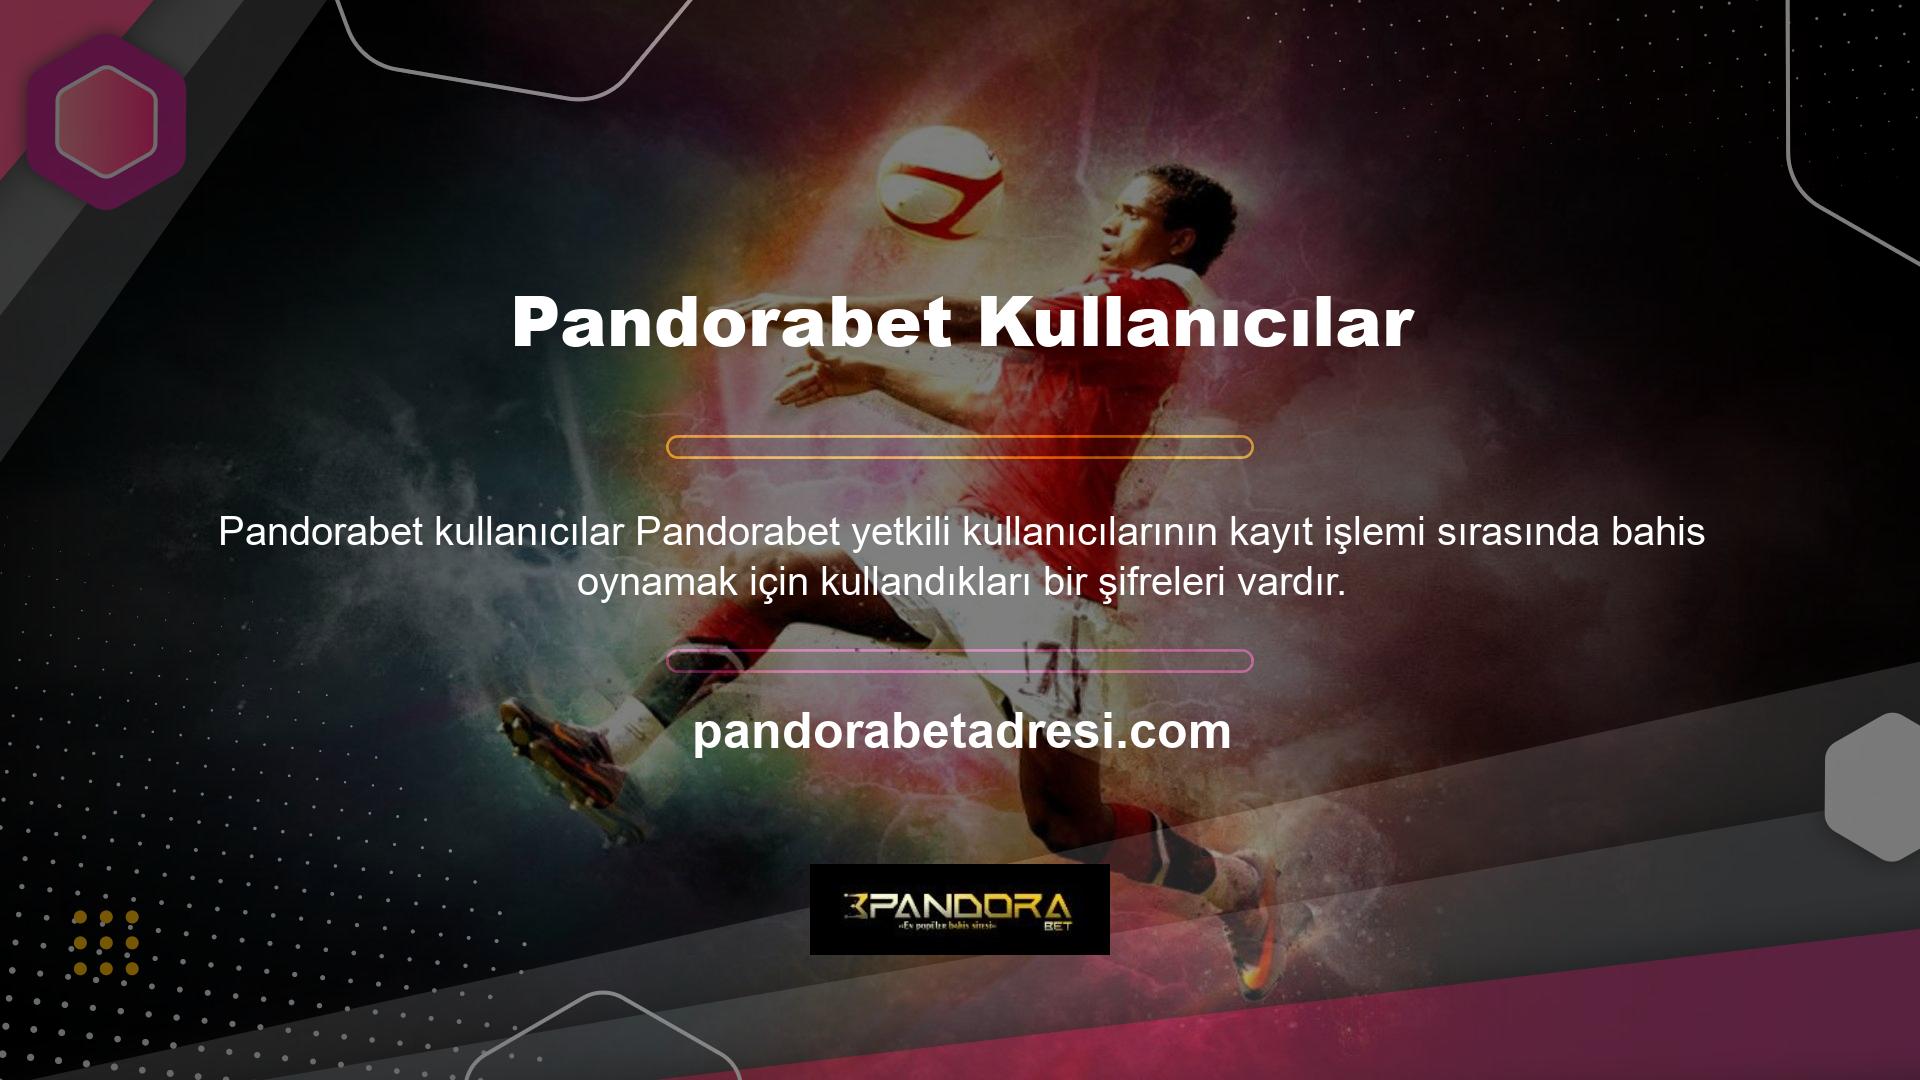 Pandorabet, hesabınızın gerçekliğini garanti eden özellikler sunar, böylece şifrenizi unutsanız bile hesabınıza kolayca giriş yapabilirsiniz